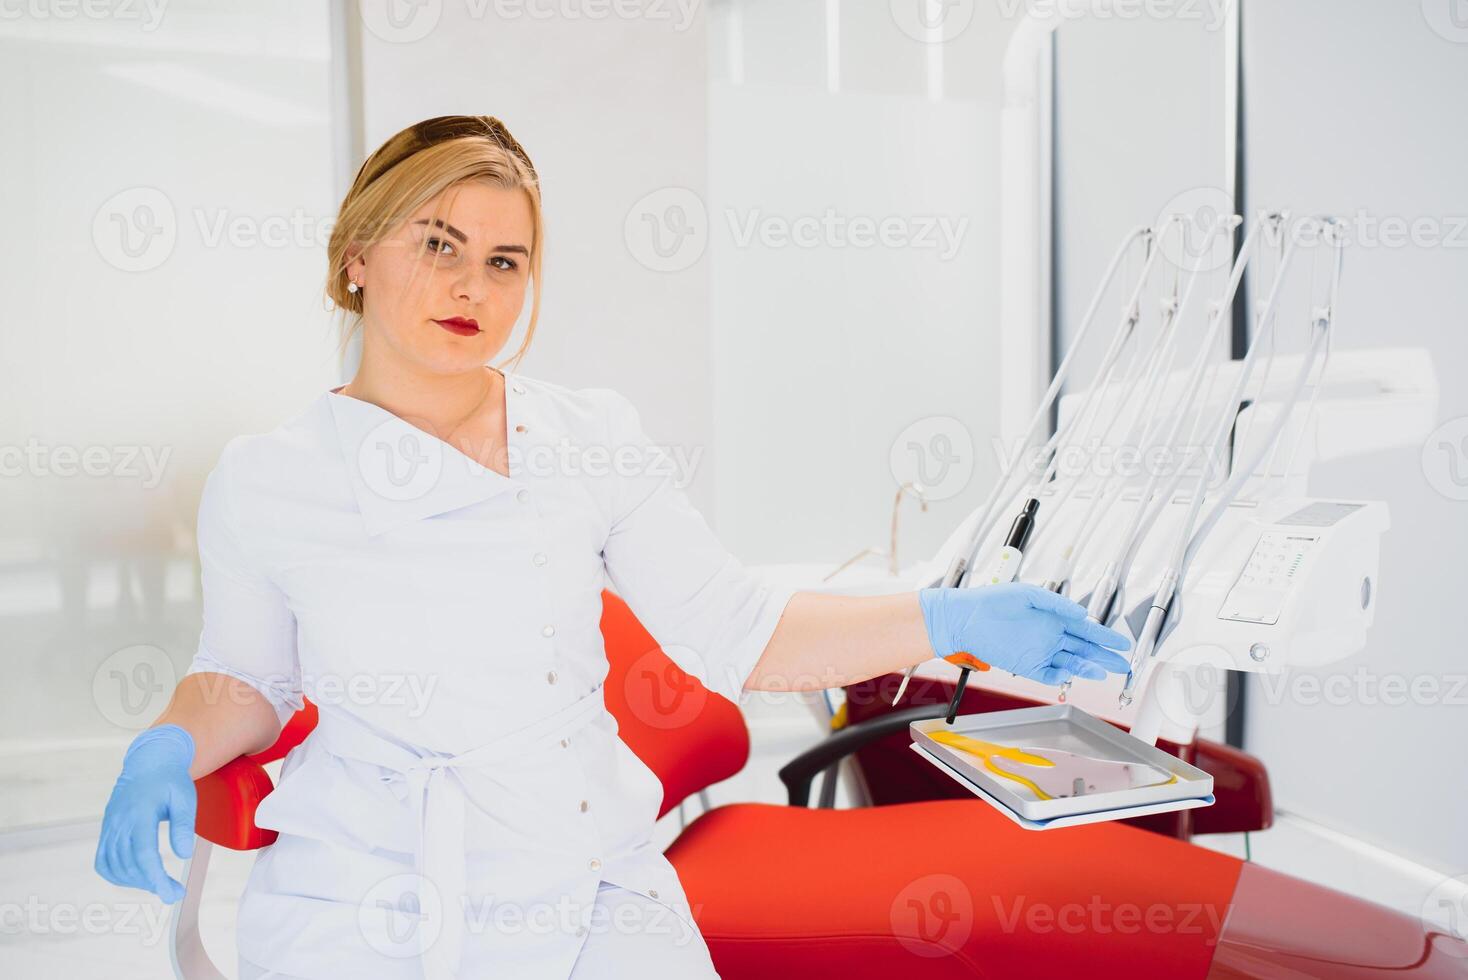 le persone, medicinale, stomatologia e assistenza sanitaria concetto - contento giovane femmina dentista con utensili al di sopra di medico ufficio sfondo foto